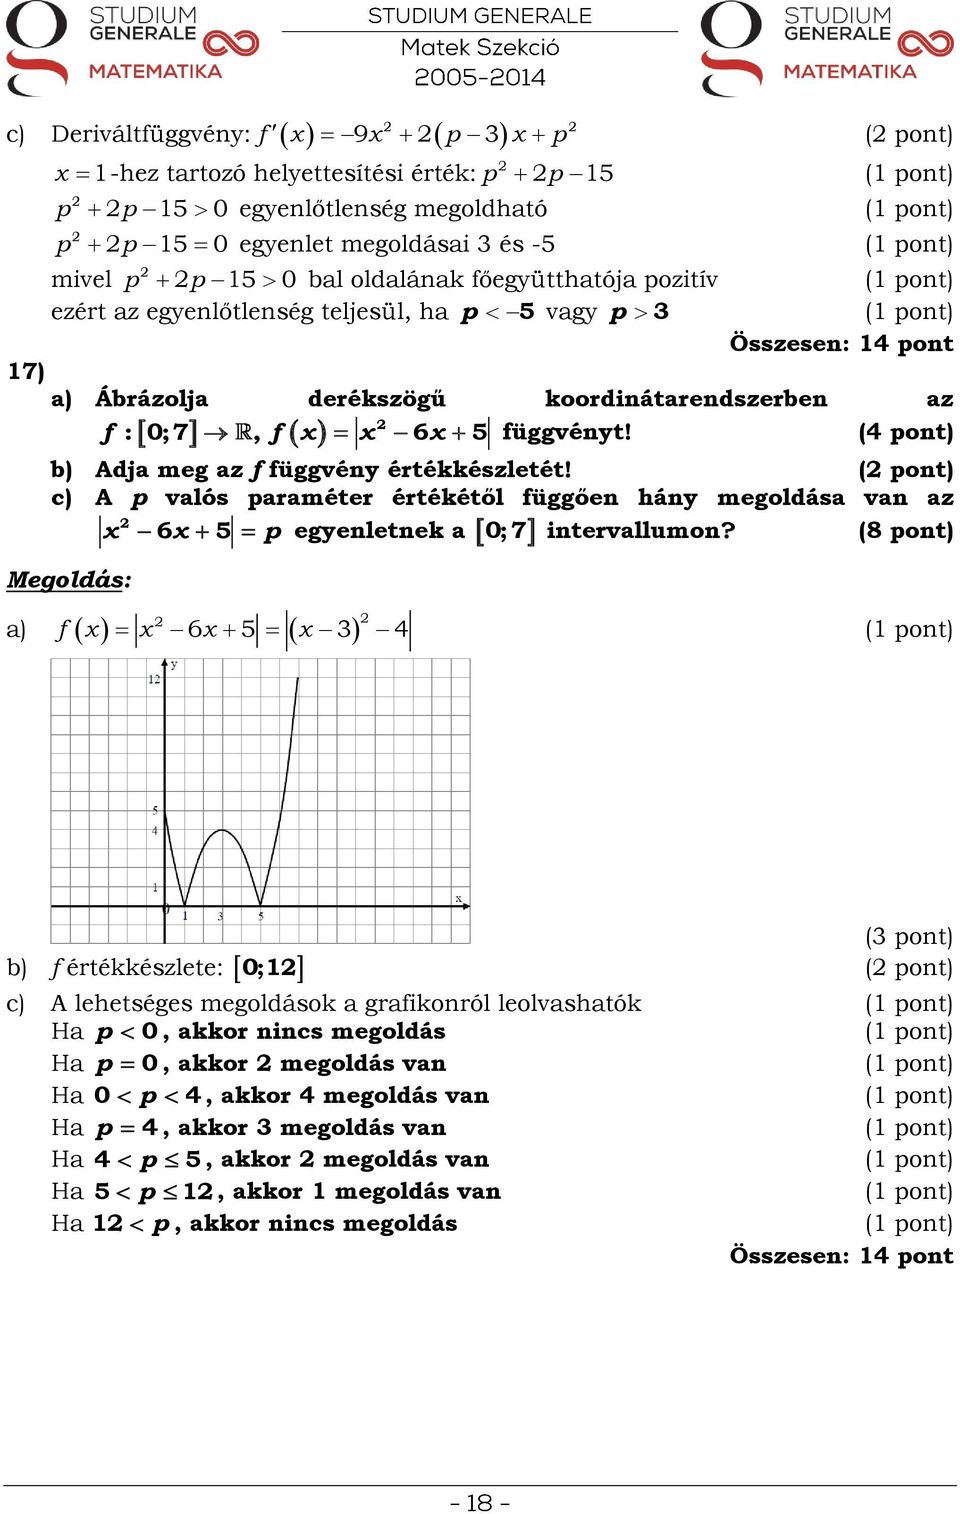 ( pont) c) A p valós paraméter értékétől függően hány megoldása van az intervallumon?